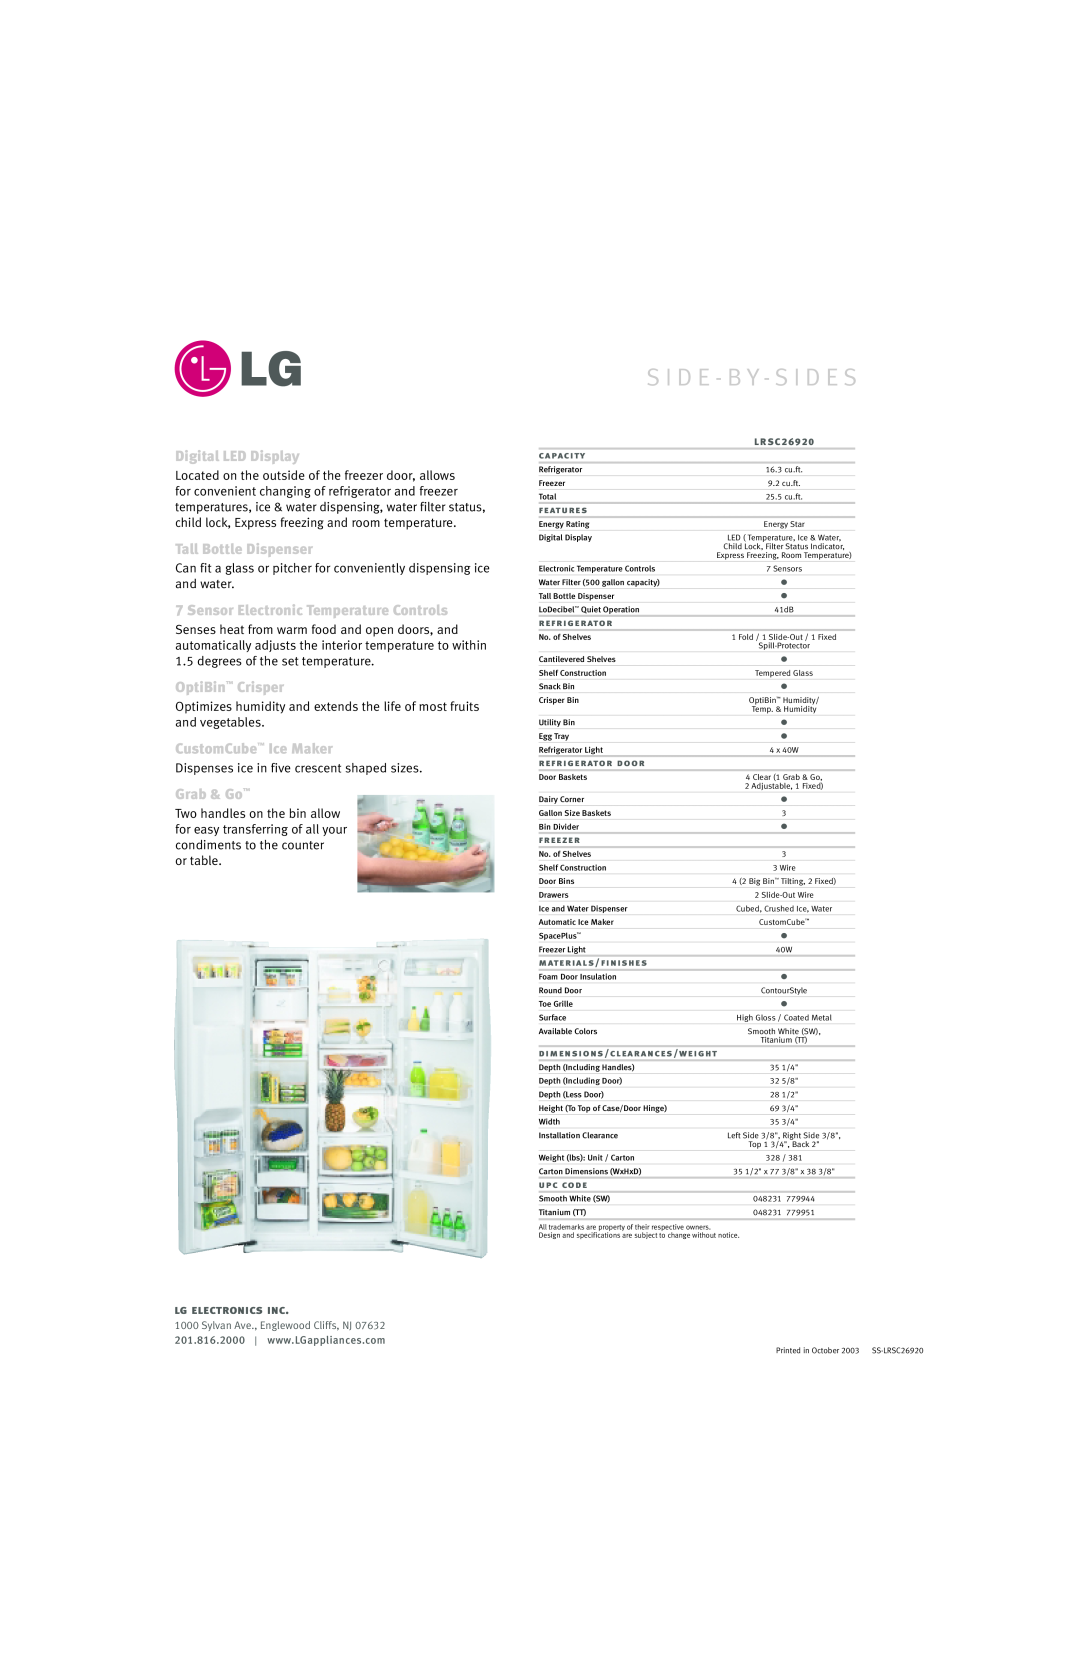 LG Electronics LRSC26920 S I D E - B Y - S I D E S, Digital LED Display, Tall Bottle Dispenser, OptiBin Crisper, Grab & Go 